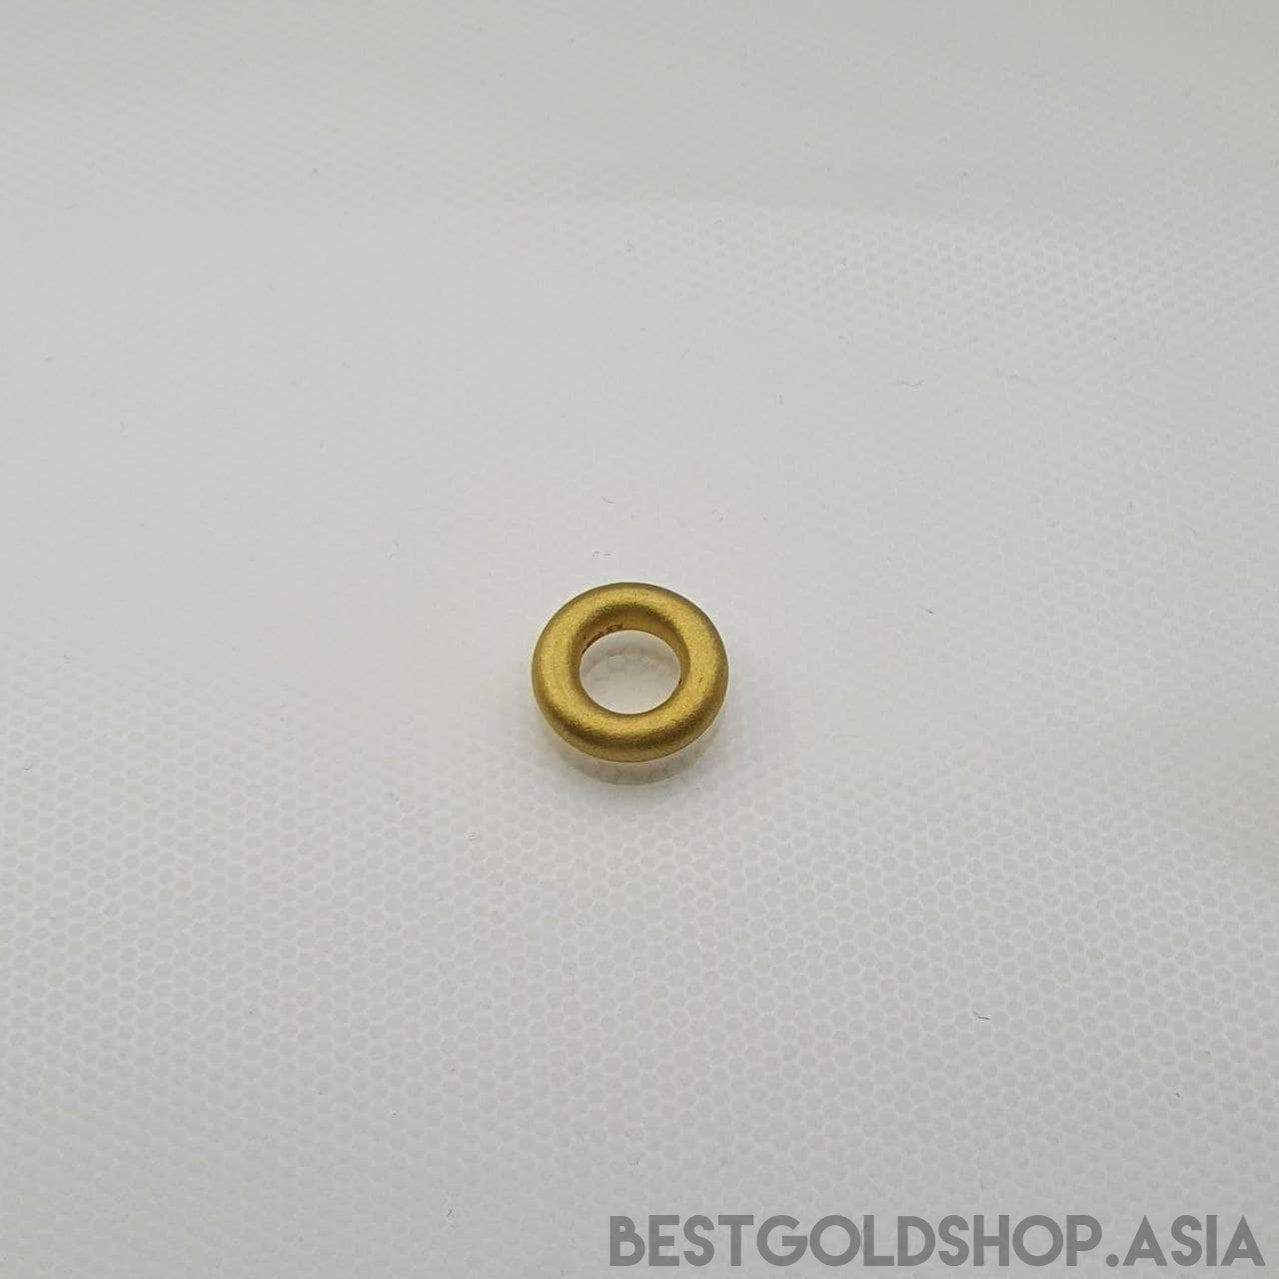 999 / 24k Gold Ring pendant-999 gold-Best Gold Shop